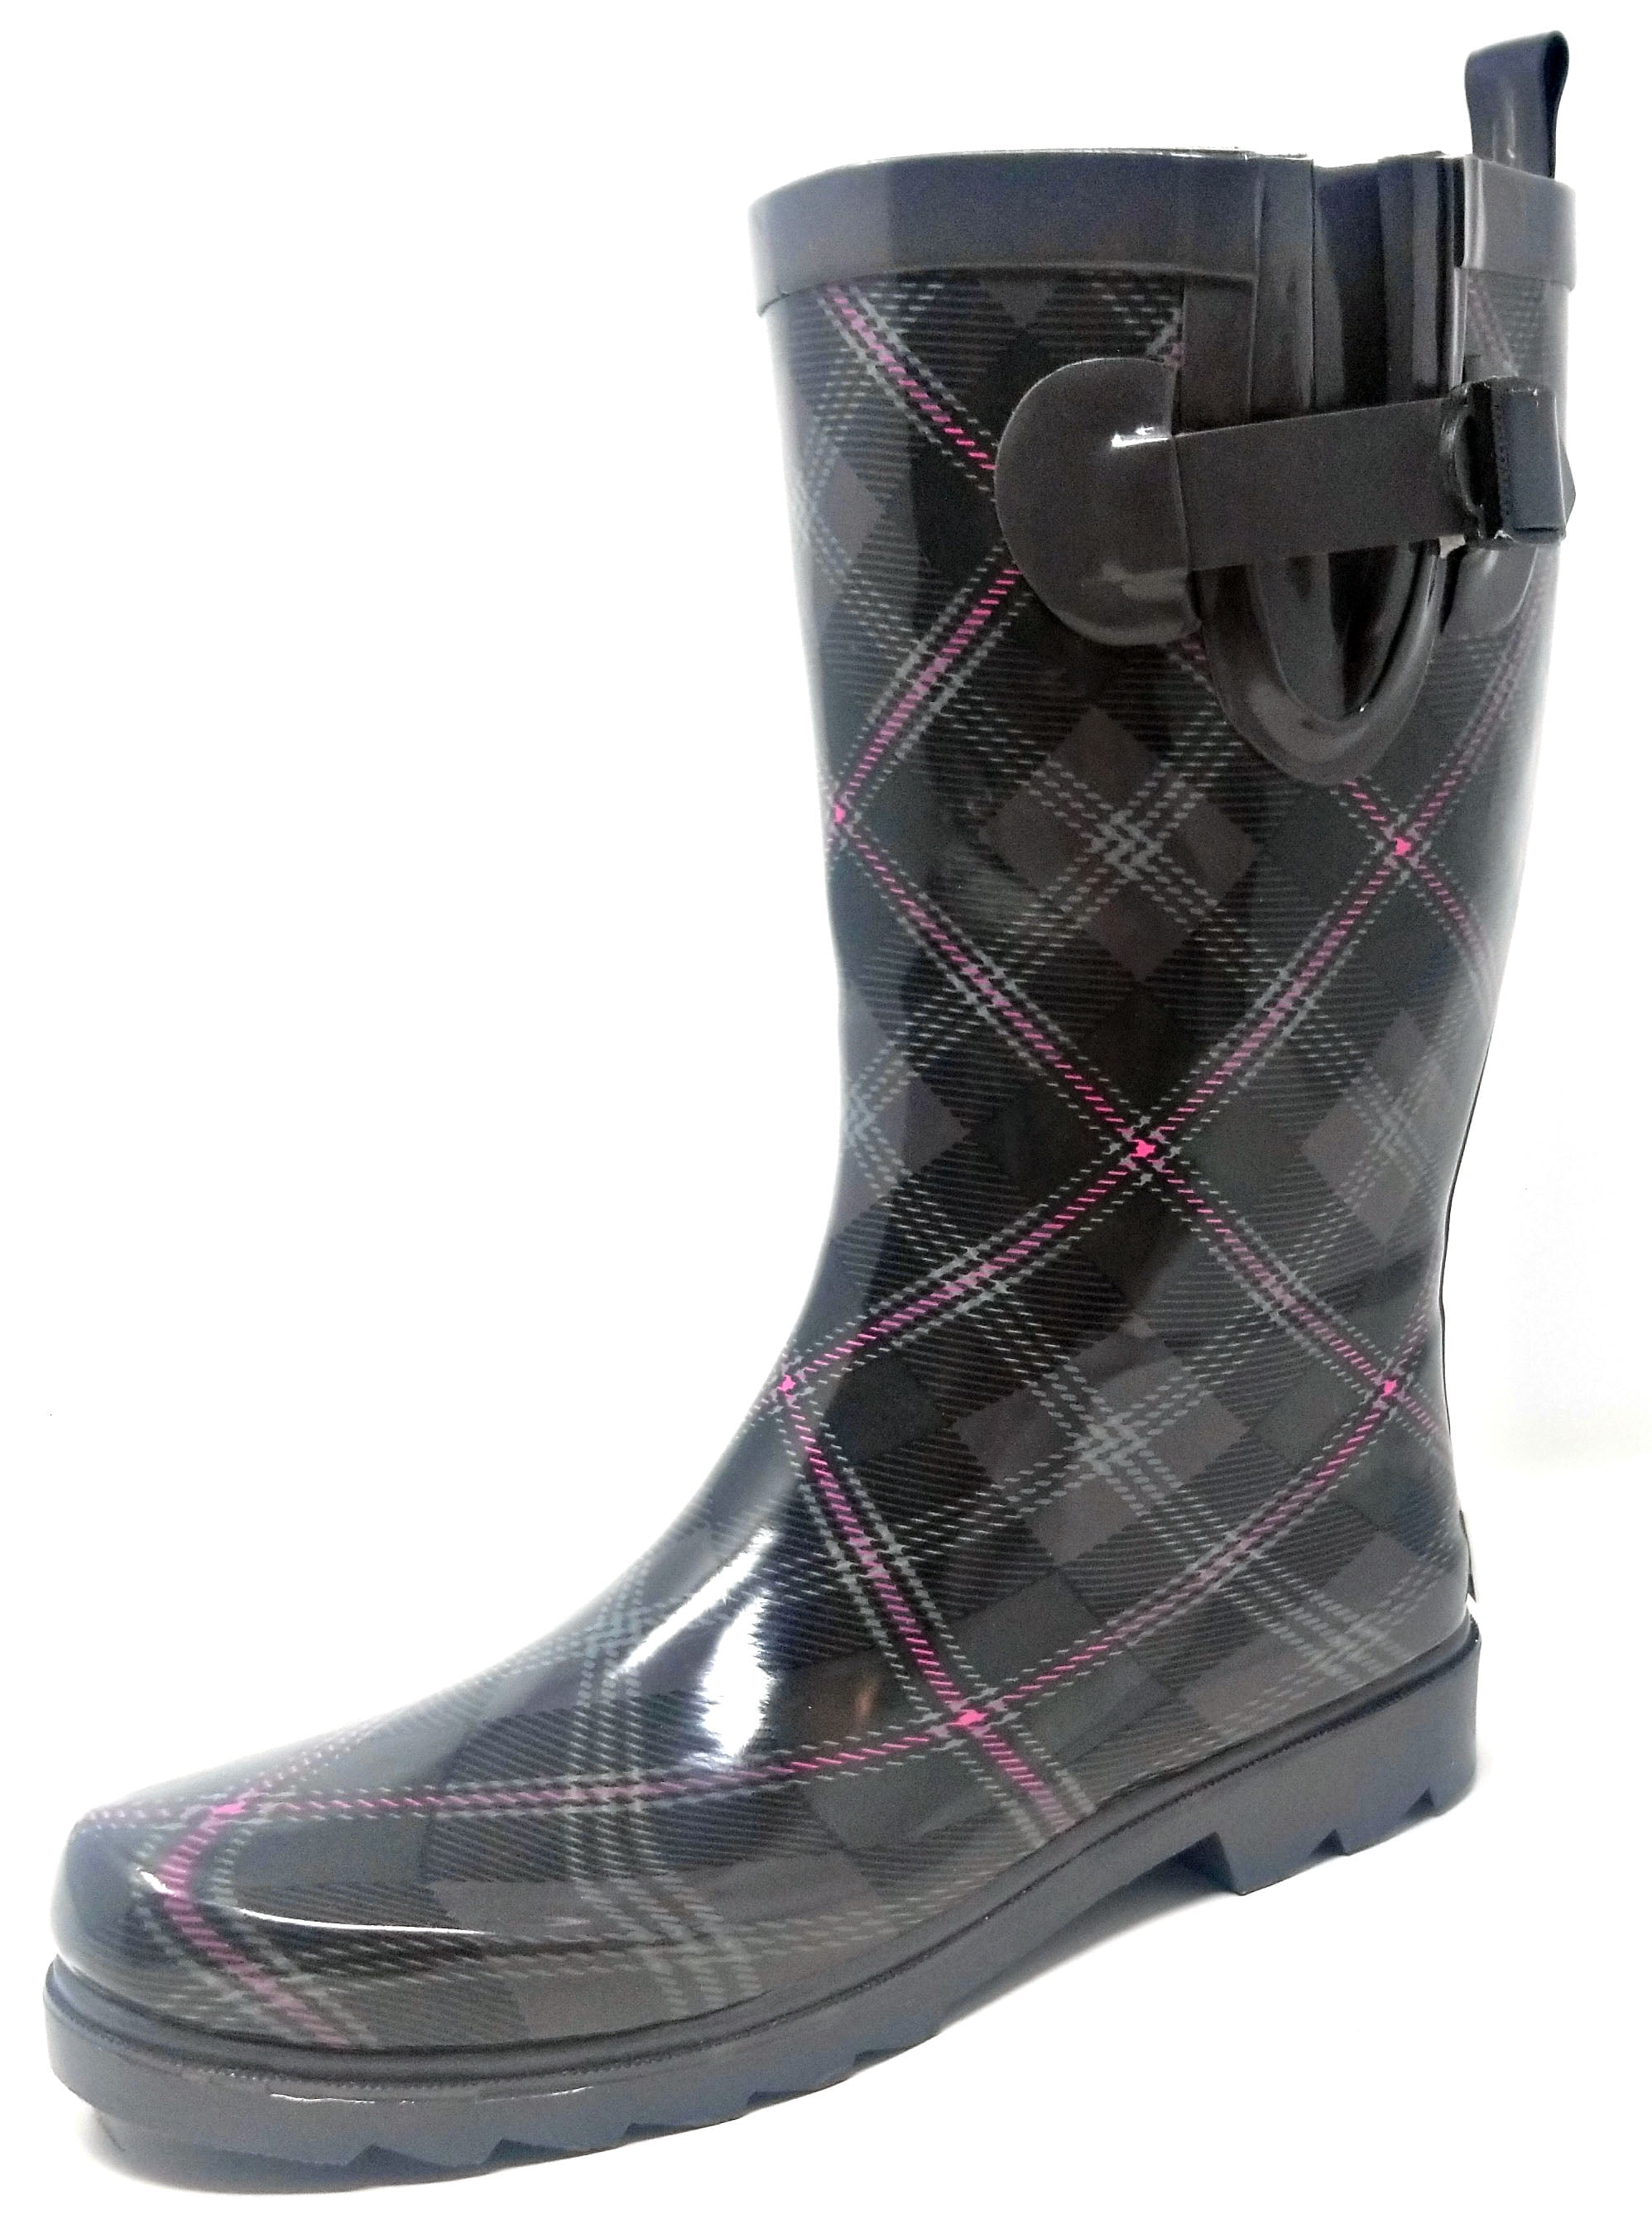 Women Rubber Rain Boots - 11